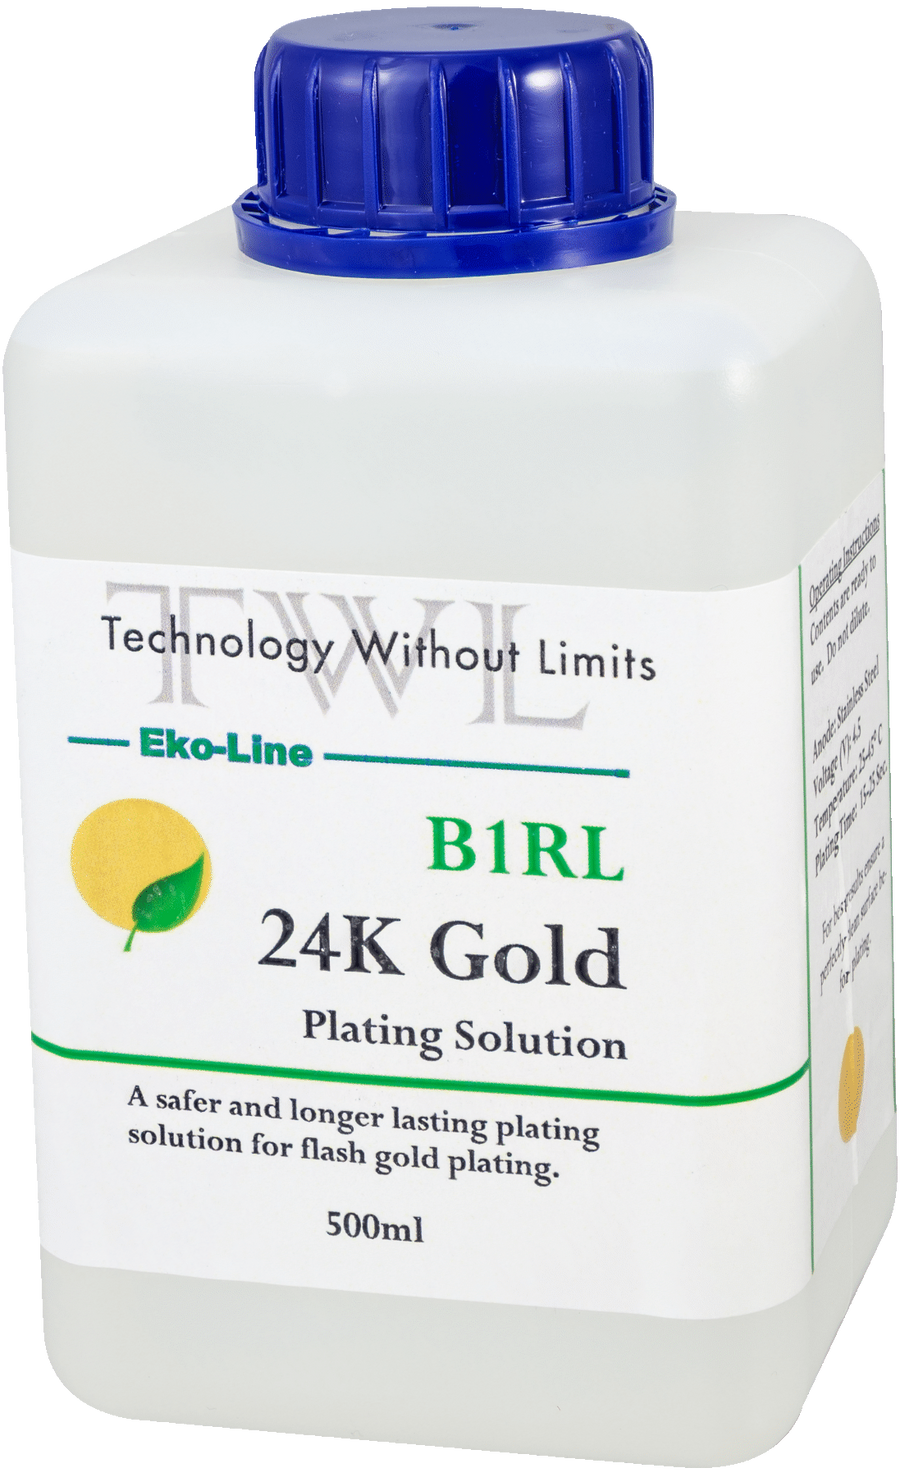 B1RL 14k Gold Plating Solution 500 ml. Eko-Line